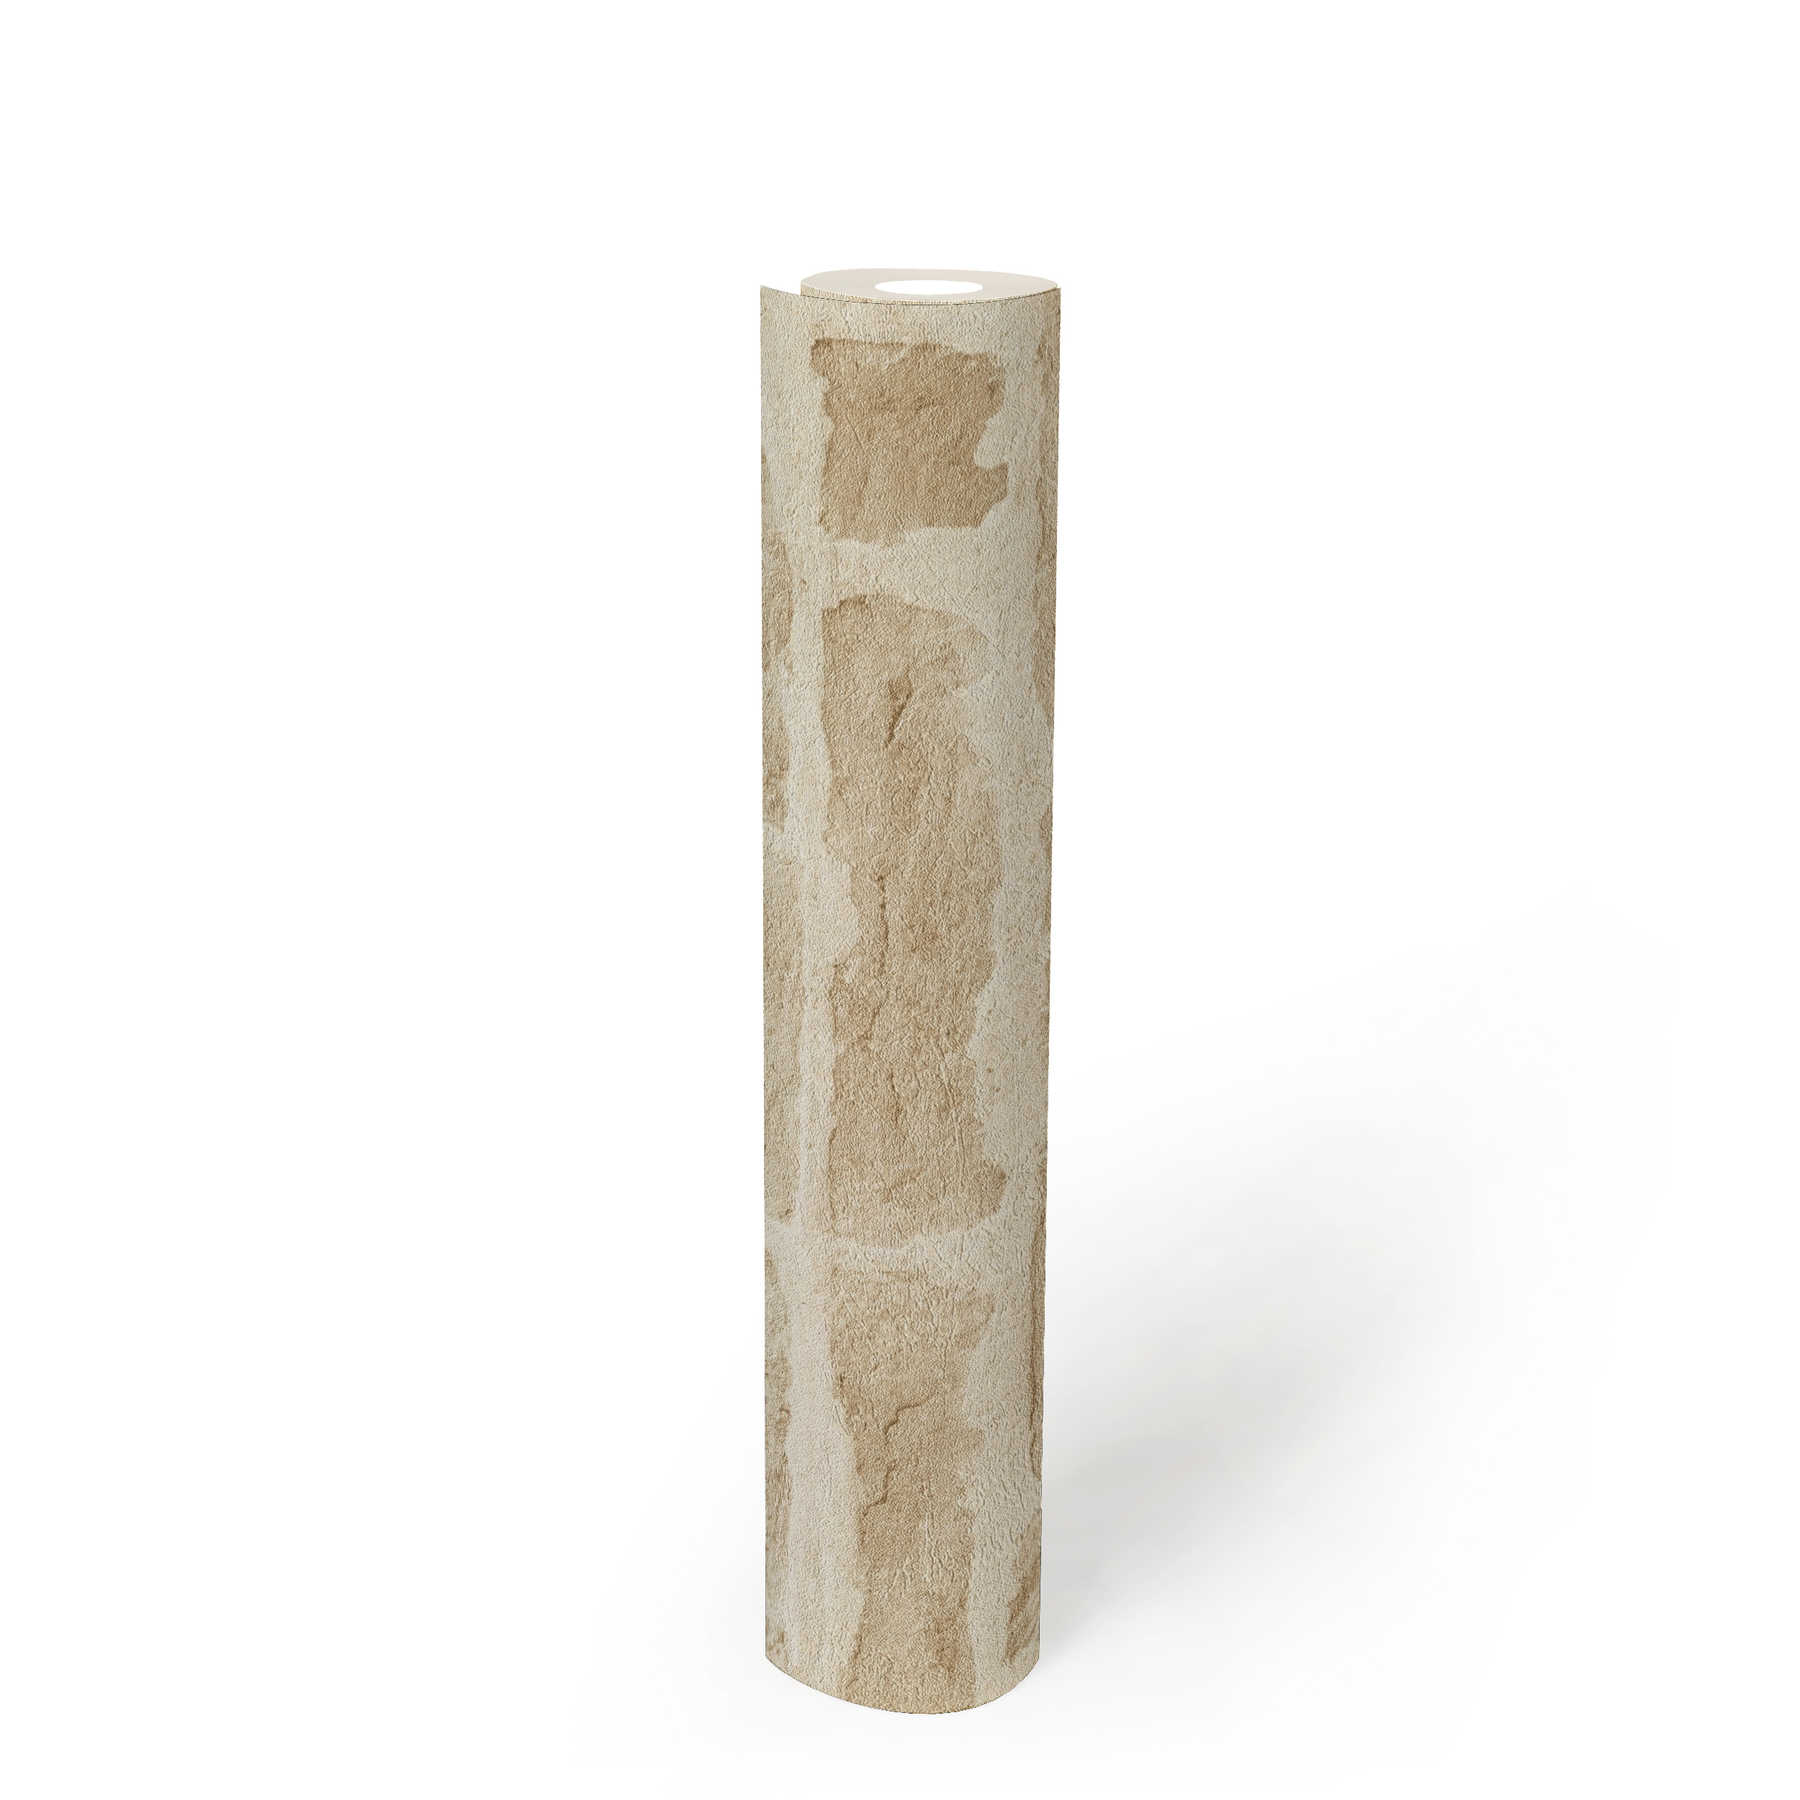             Carta da parati in tessuto non tessuto beige chiaro con aspetto di pietra naturale - beige, crema
        